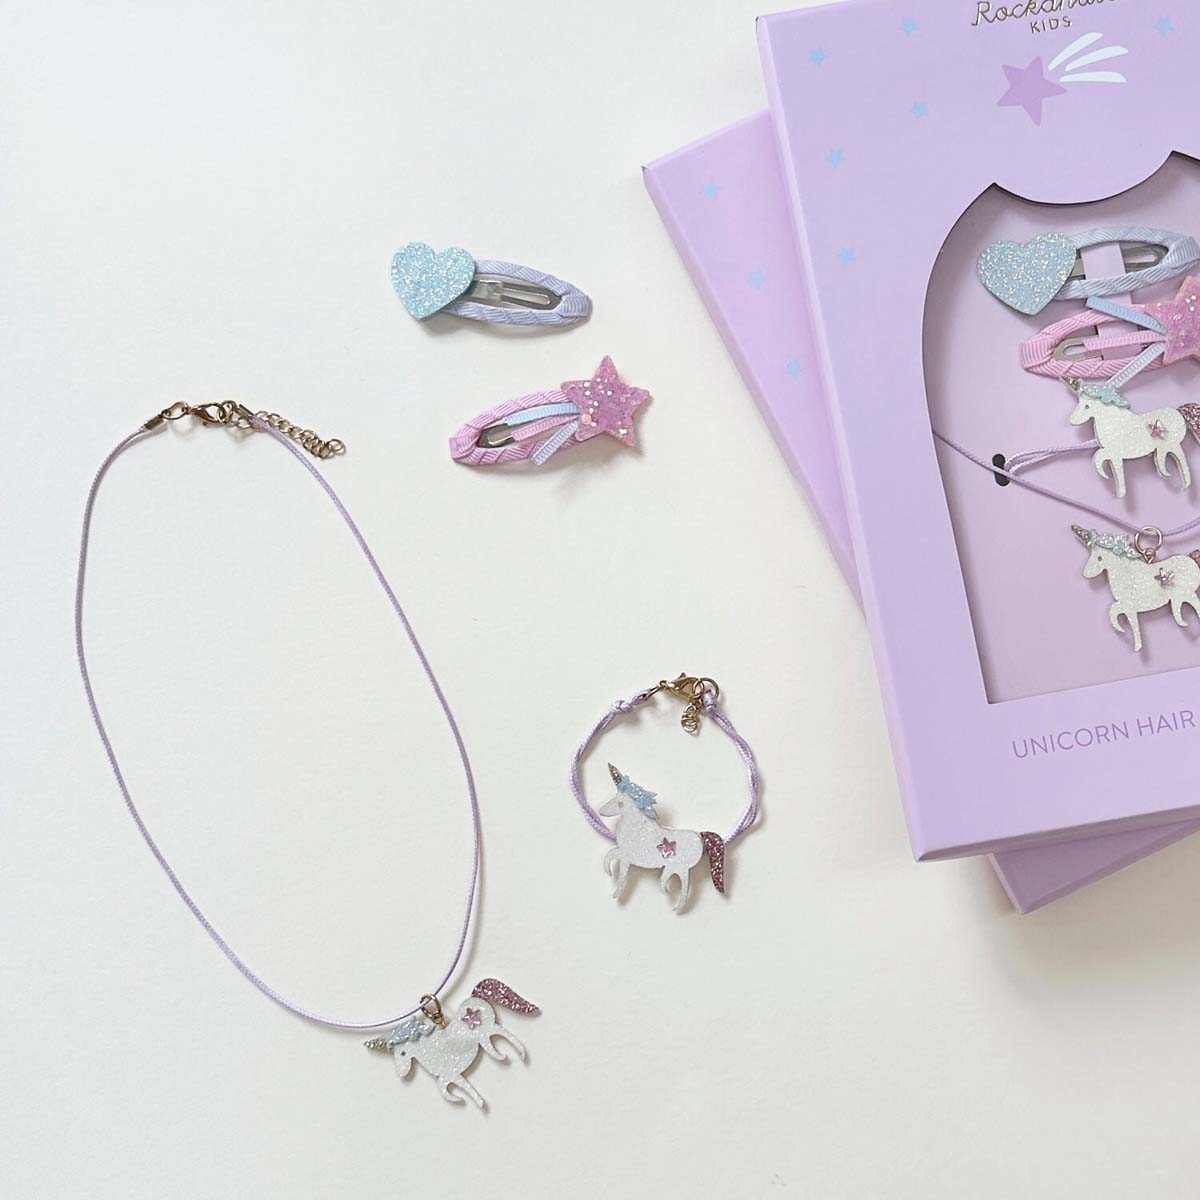 Voor echte unicorn lovers: Rockahula’s unicorn haar en sieraden set! De set bestaat uit een armband, ketting en twee haarspeldjes. Versierd met glitter unicorns, hartje en een ster. VanZus